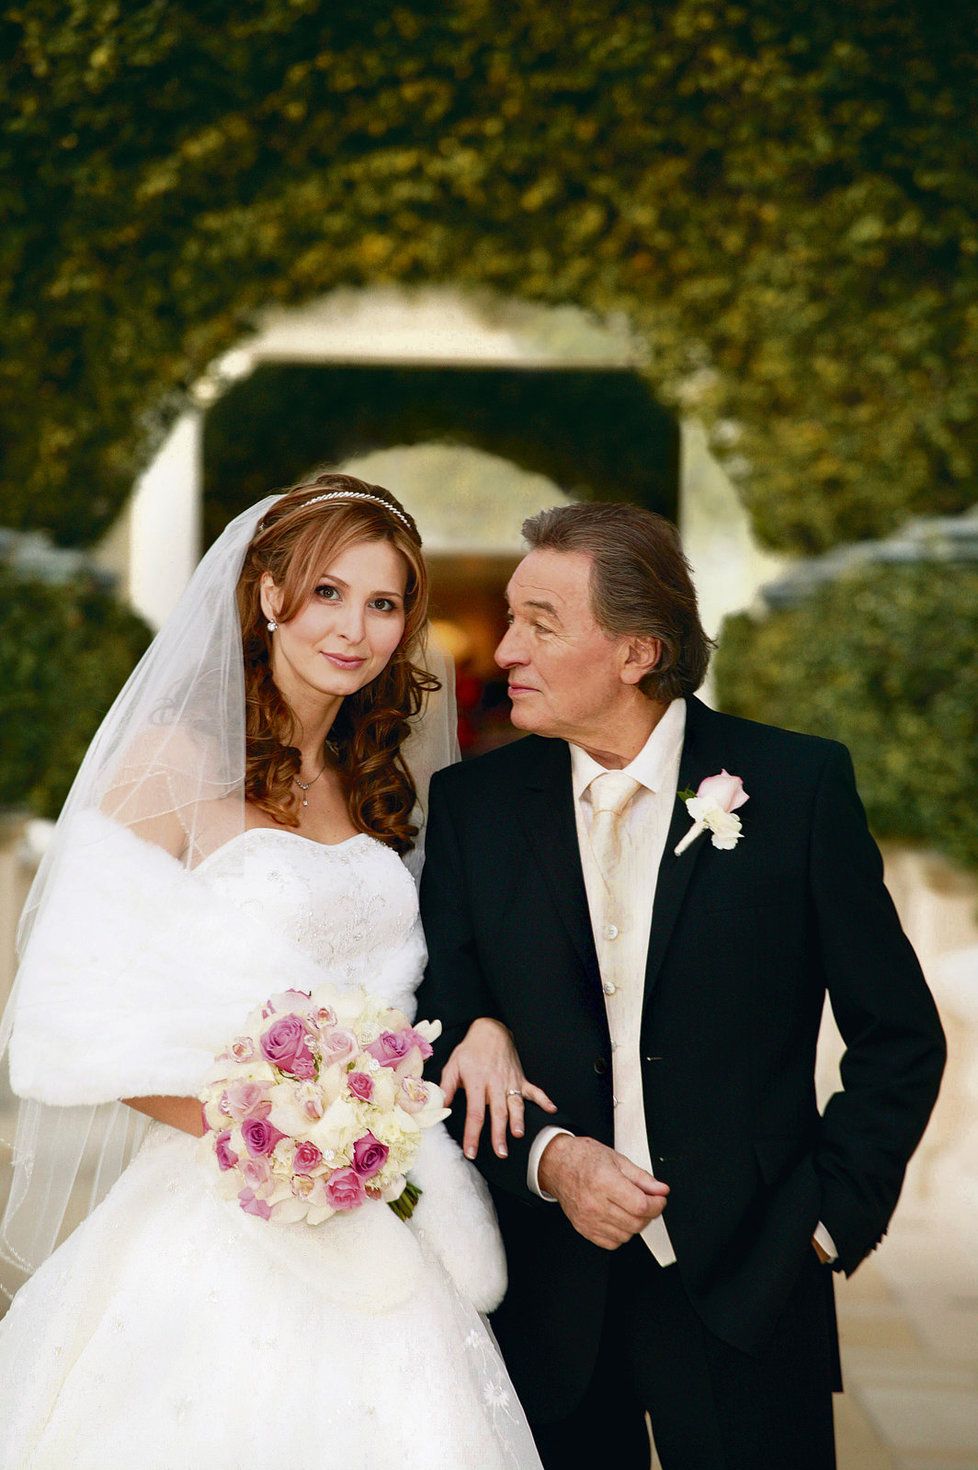 Karel Gott (76) s Ivanou (40) se dali dohromady okolo roku 2000. První dítě přišlo v roce 2006 a o dva roky později se konala tajná svatba v Las Vegas.